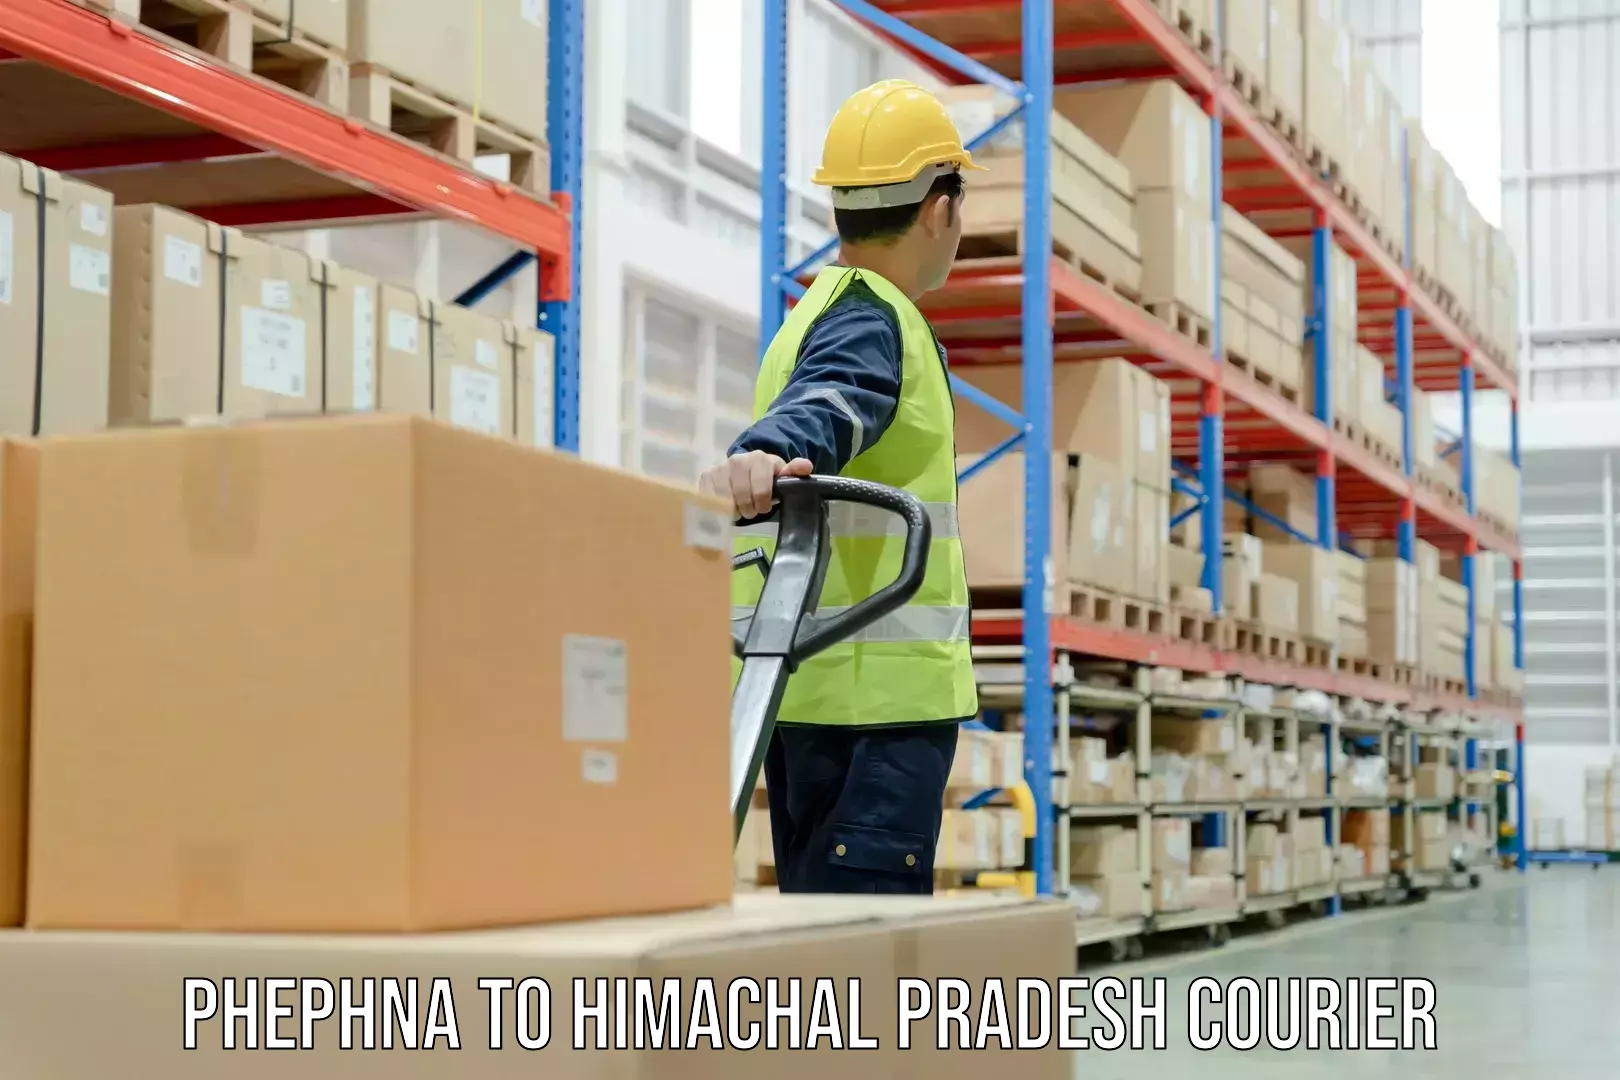 Premium delivery services Phephna to Rehan